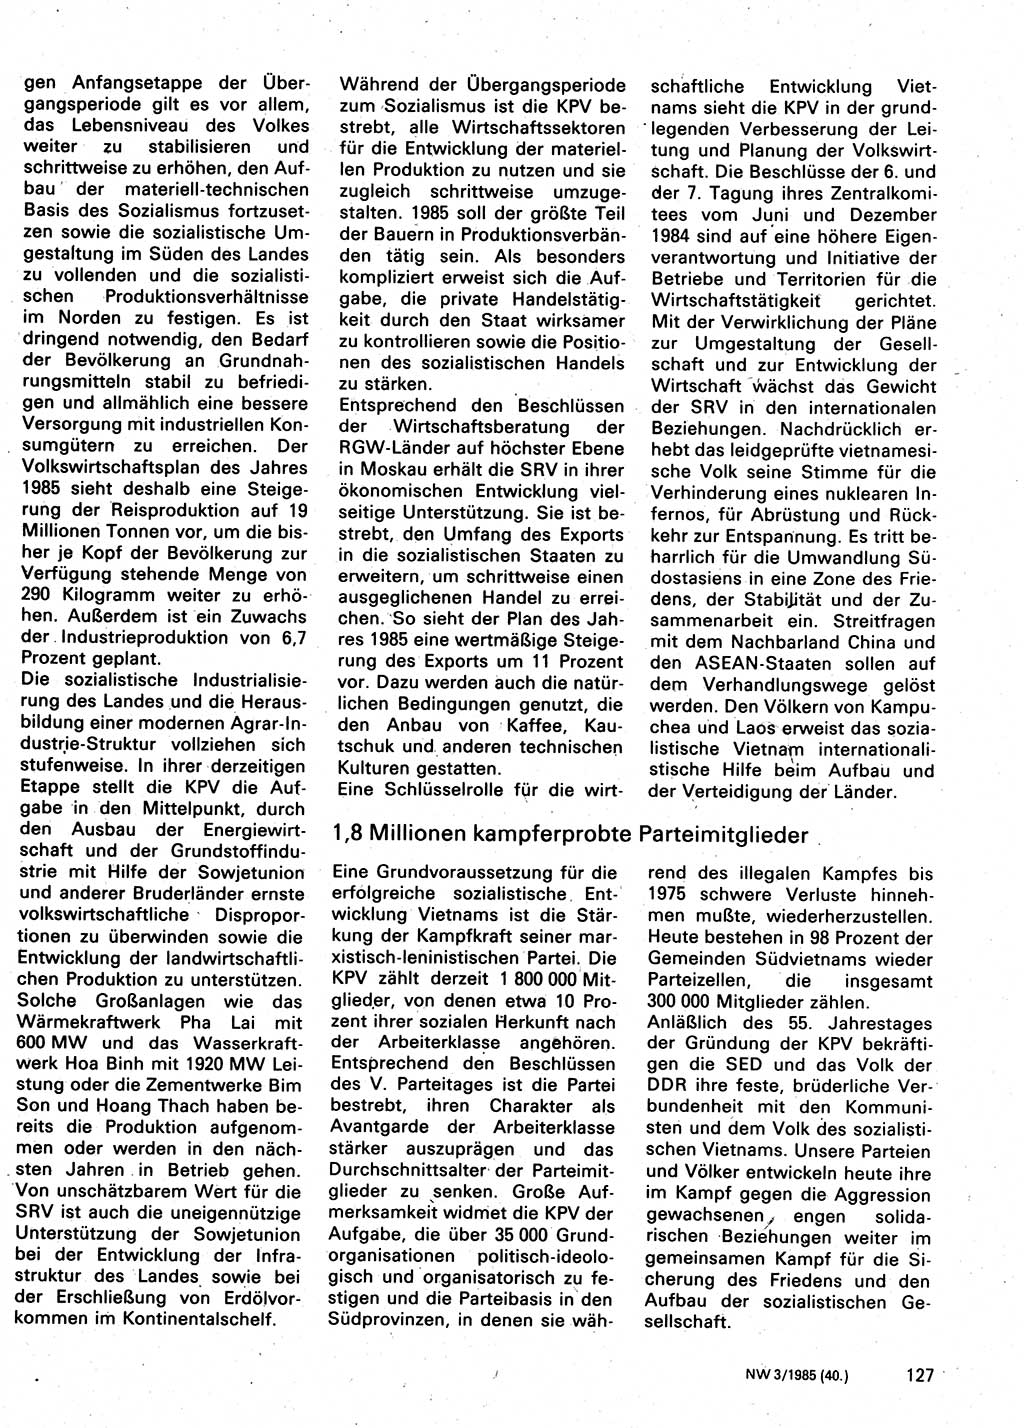 Neuer Weg (NW), Organ des Zentralkomitees (ZK) der SED (Sozialistische Einheitspartei Deutschlands) für Fragen des Parteilebens, 40. Jahrgang [Deutsche Demokratische Republik (DDR)] 1985, Seite 127 (NW ZK SED DDR 1985, S. 127)